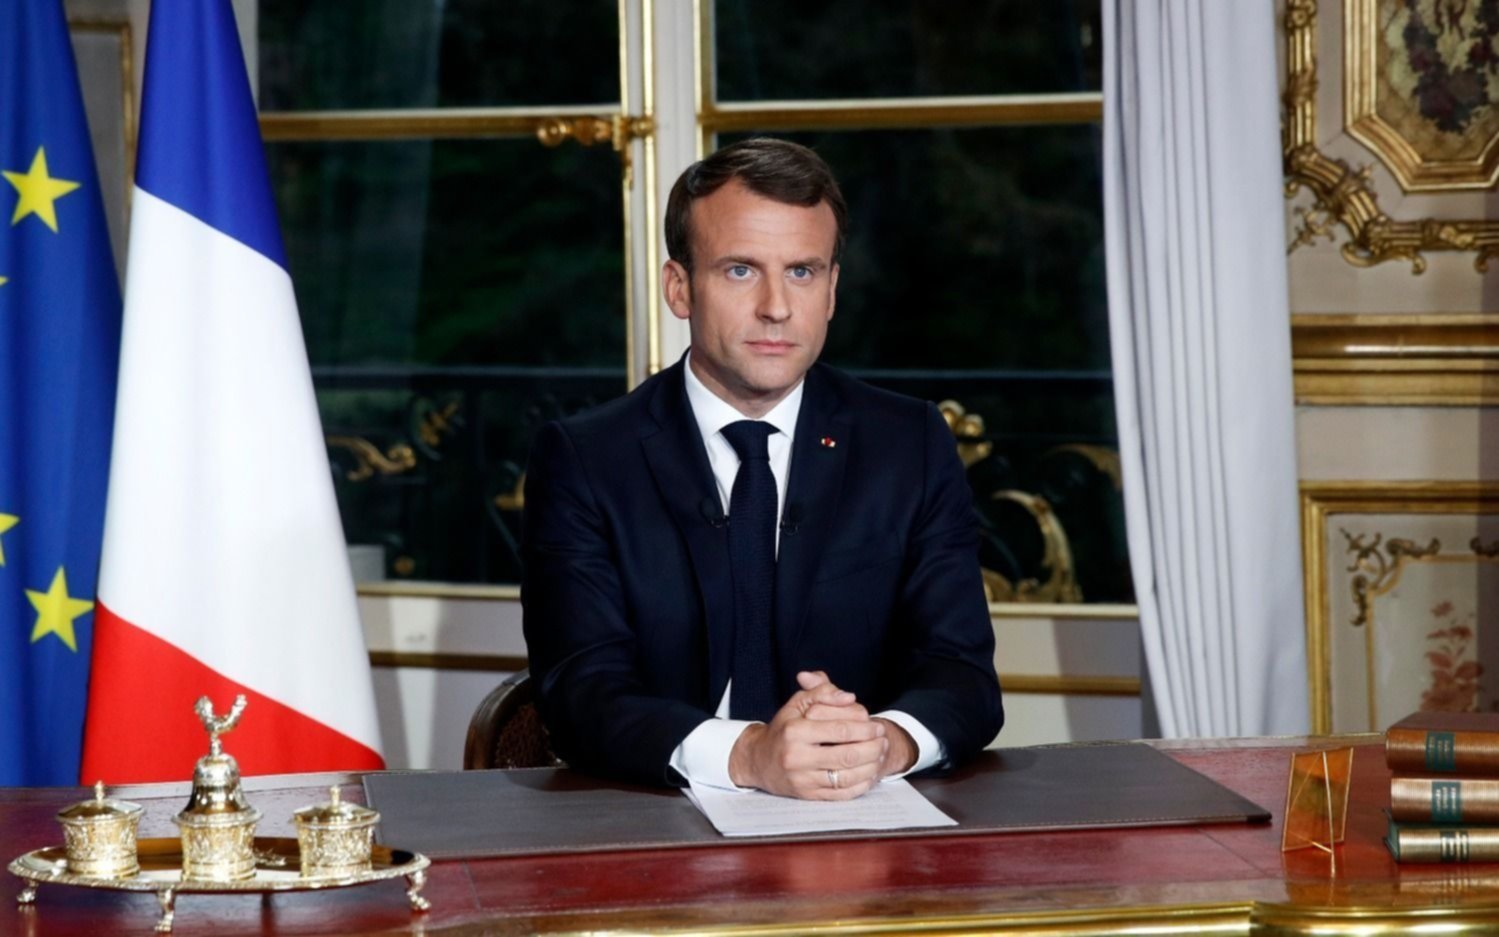 Con nuevo gabinete, Macron busca oxigenar su Presidencia